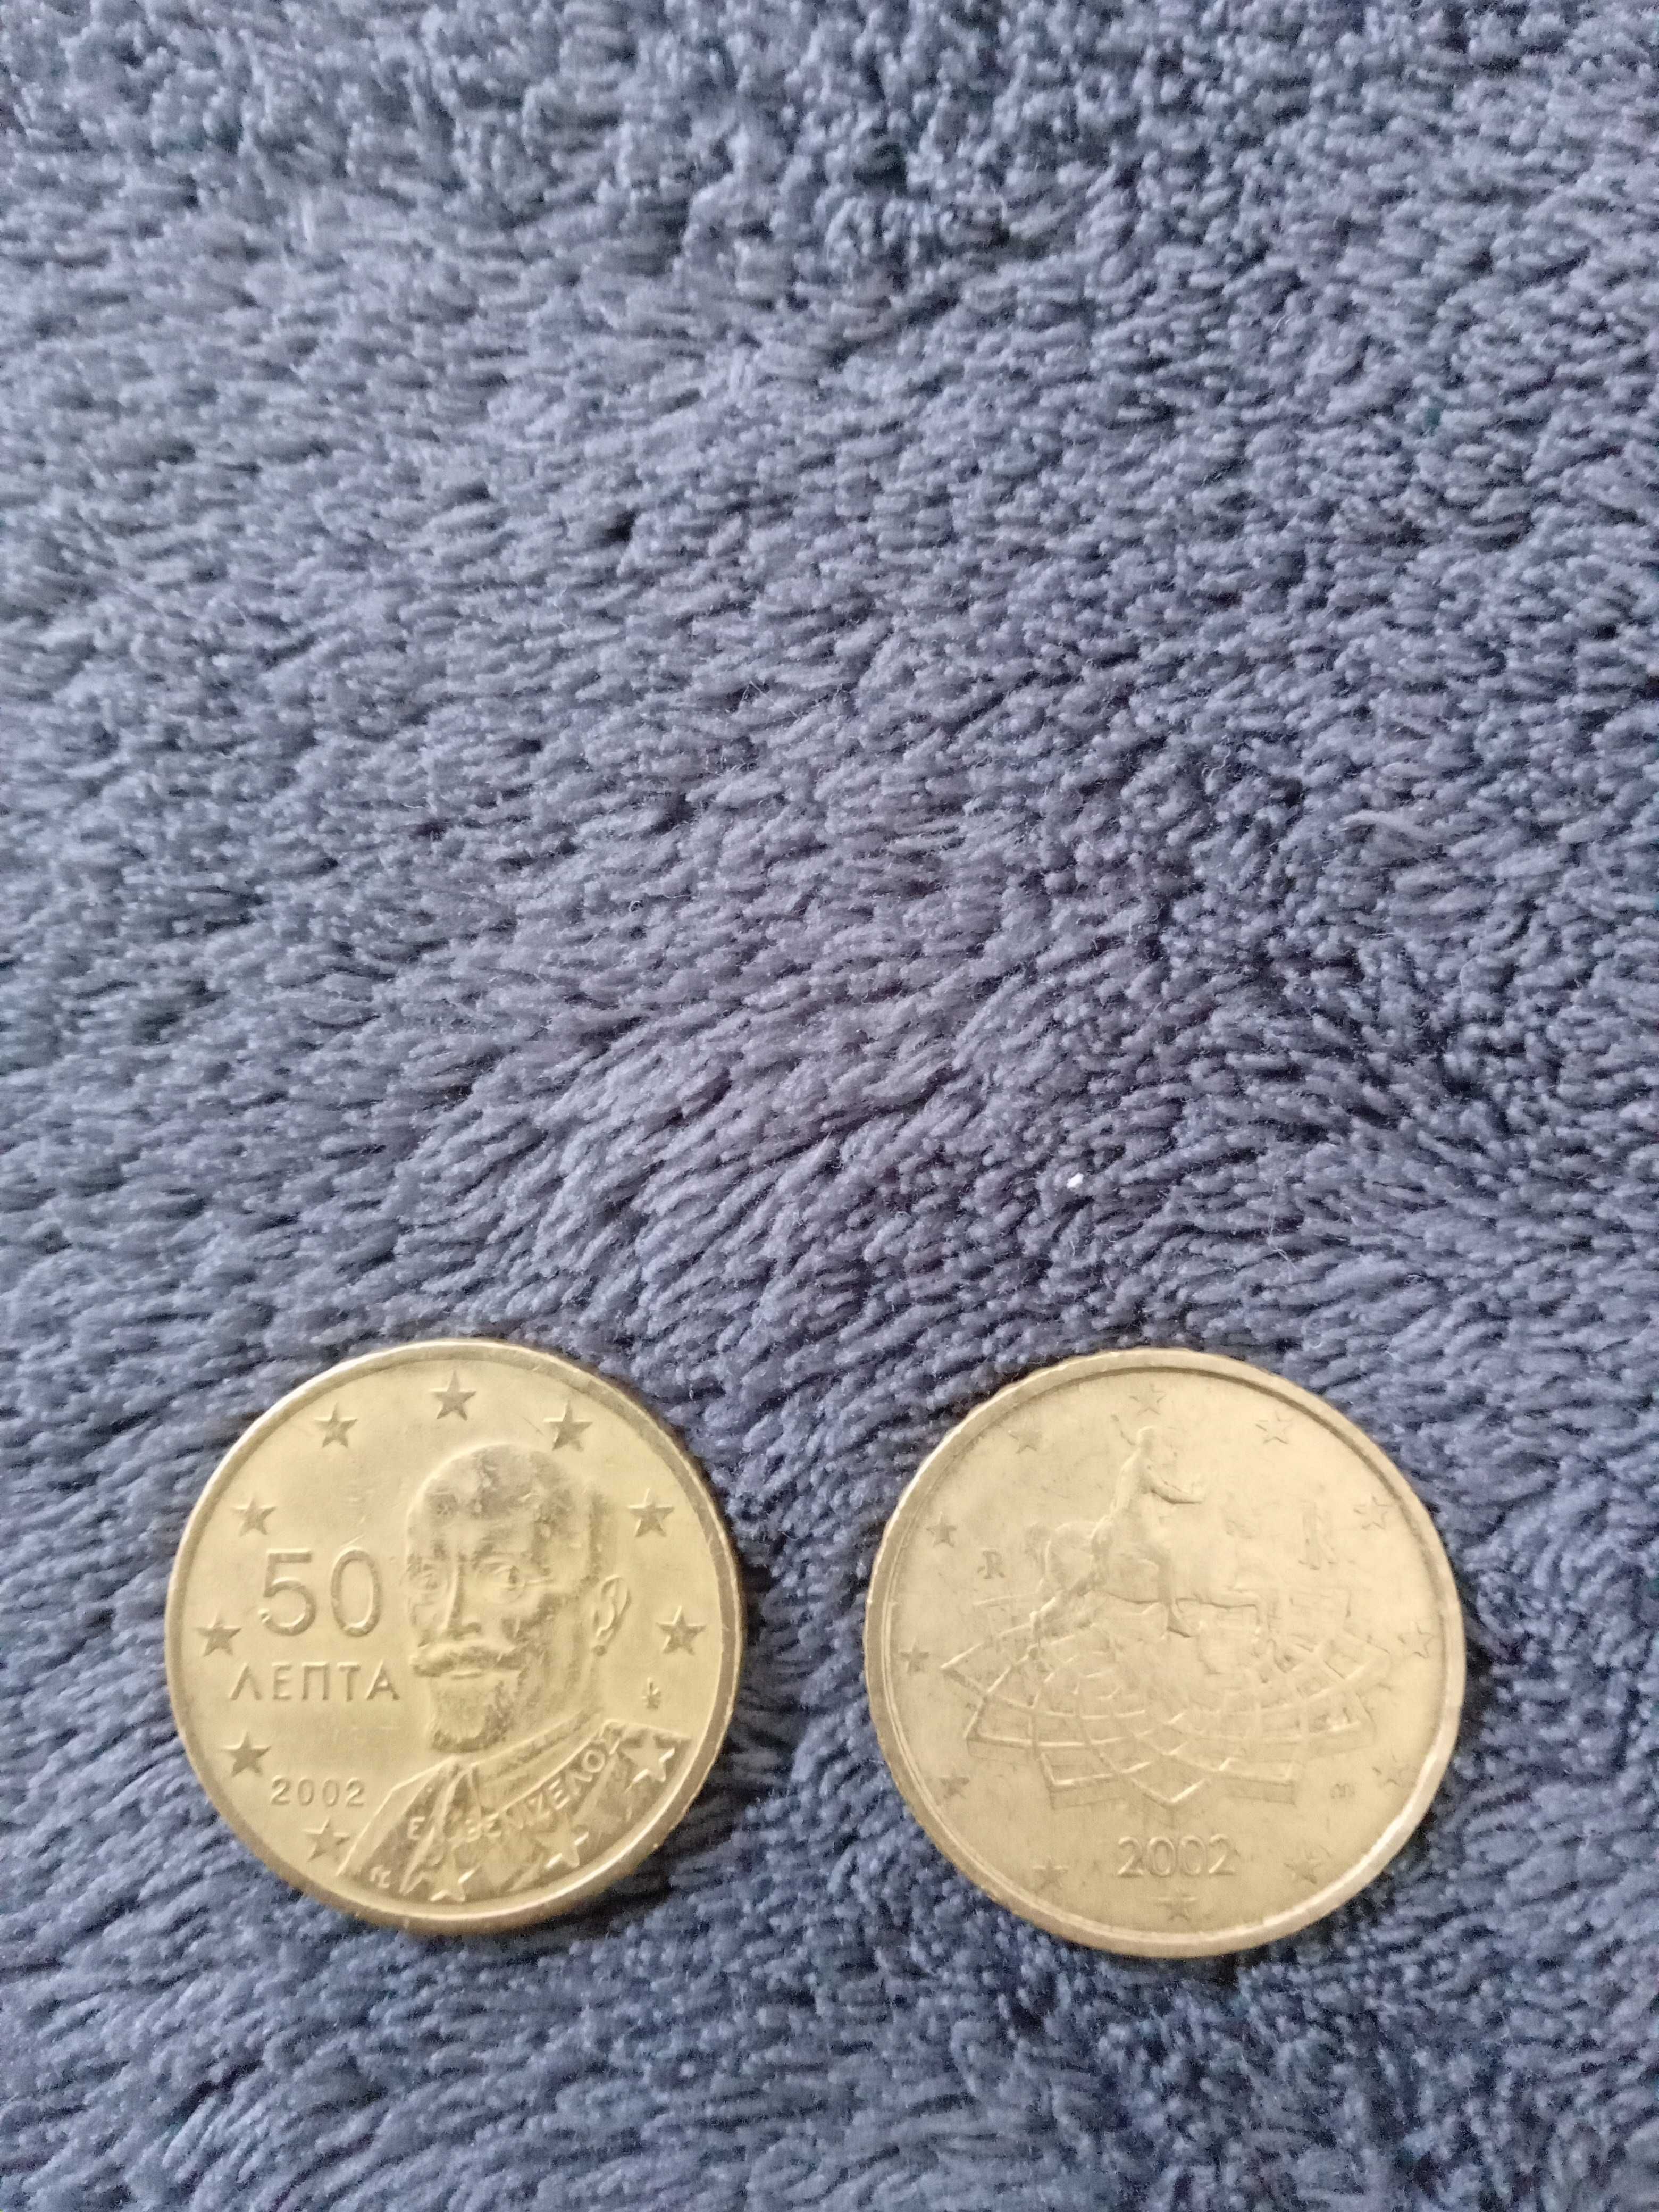 50 euro centi 2002 Italia si Grecia